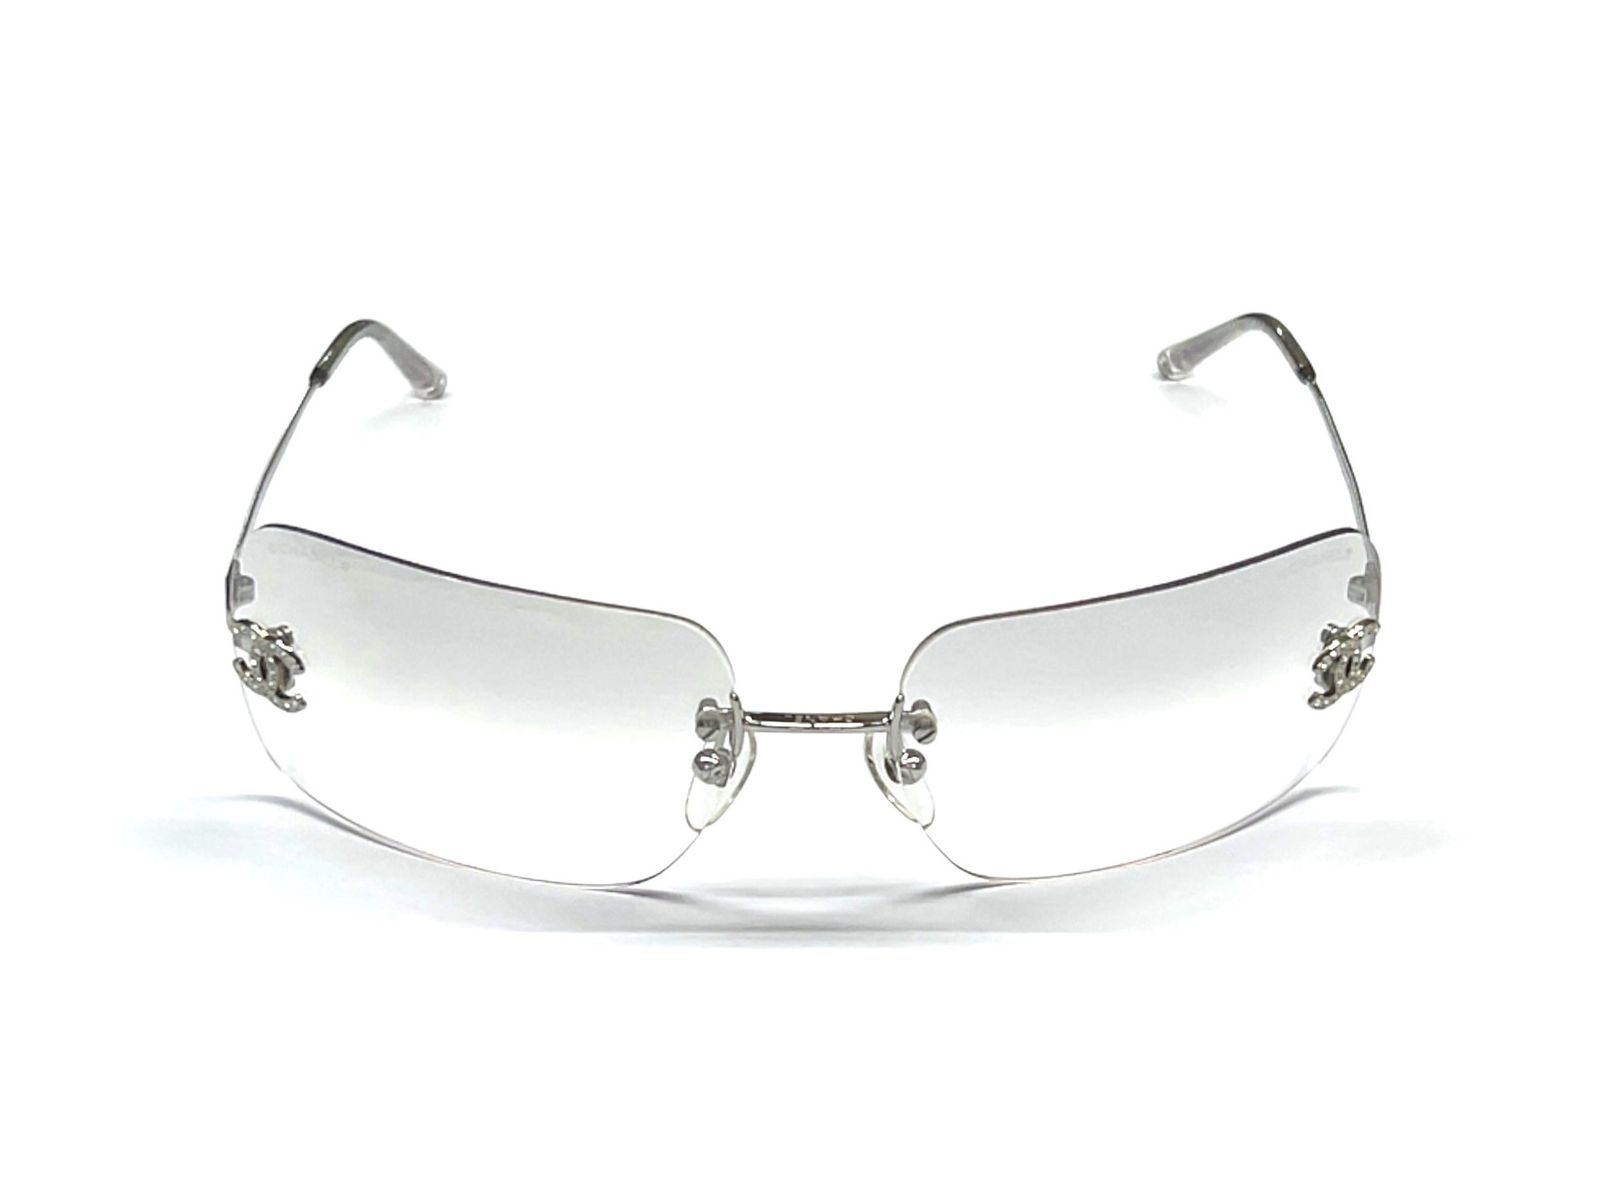 CHANEL (シャネル) イタリア製 サングラス メガネ 眼鏡 アイウェア グラデーション ココマーク ロゴラインストーン 4017D 6217  シルバー ブランド/025